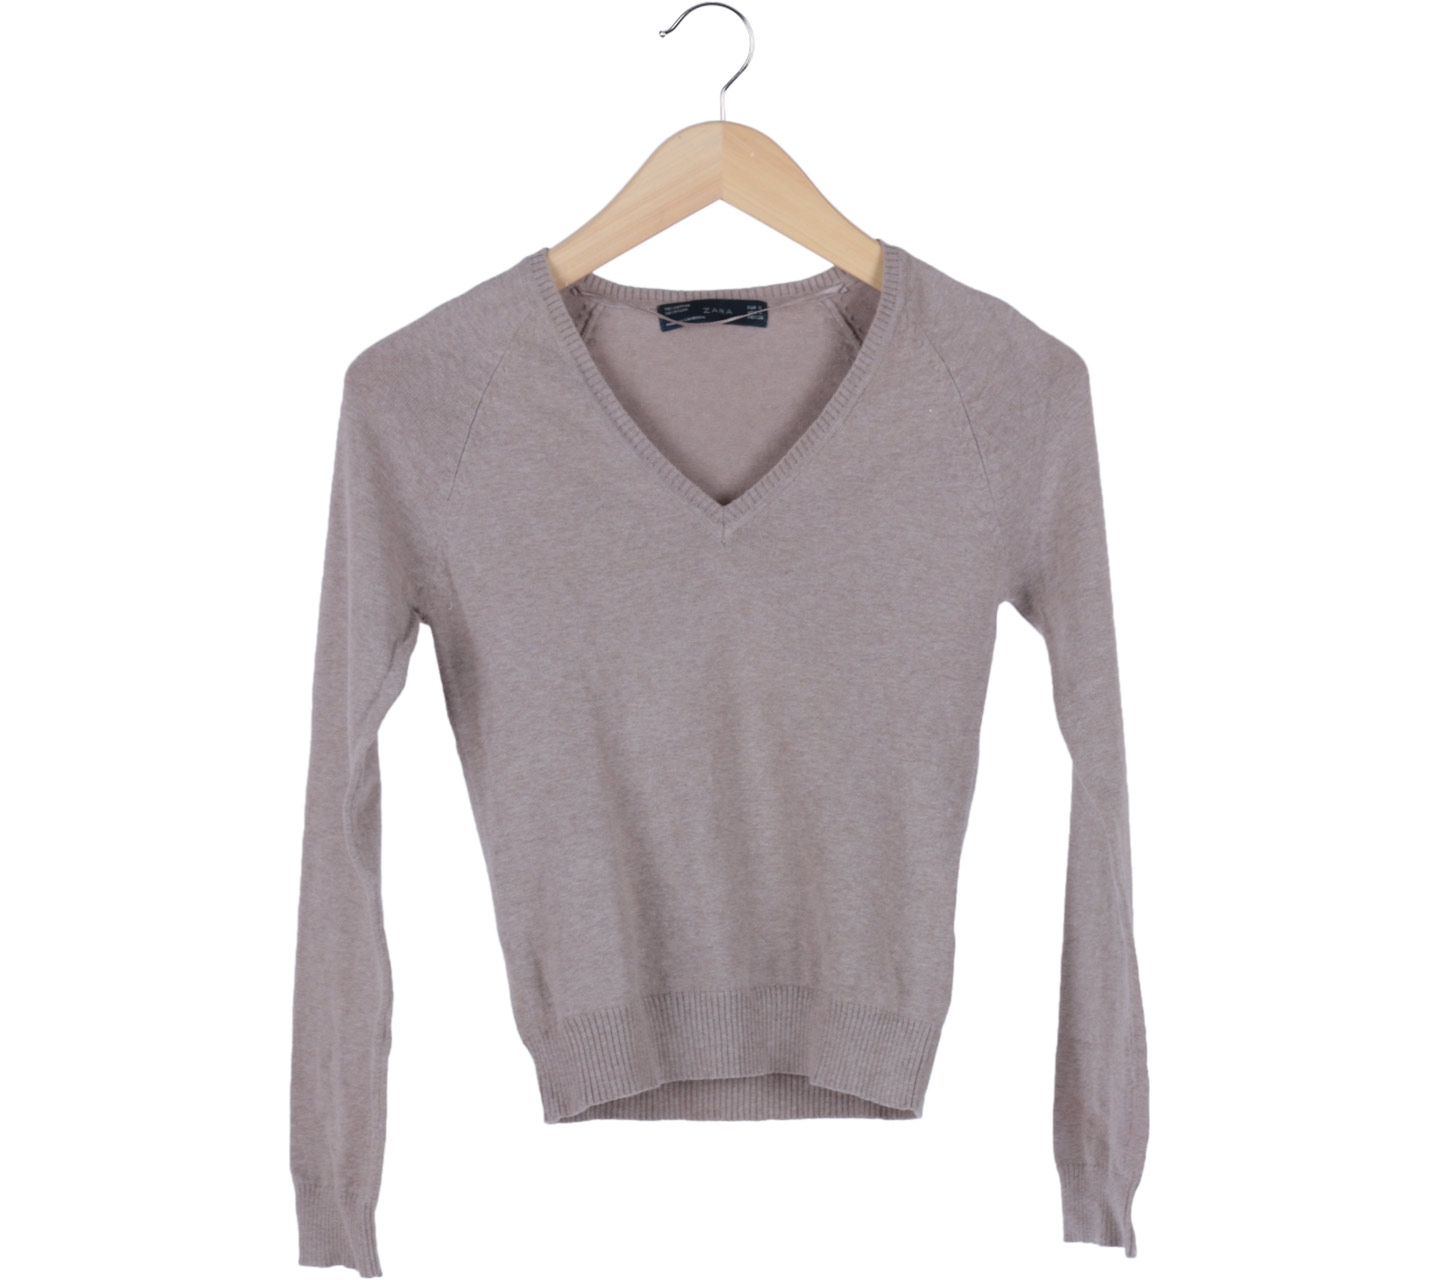 Zara Cream Knitted Sweater